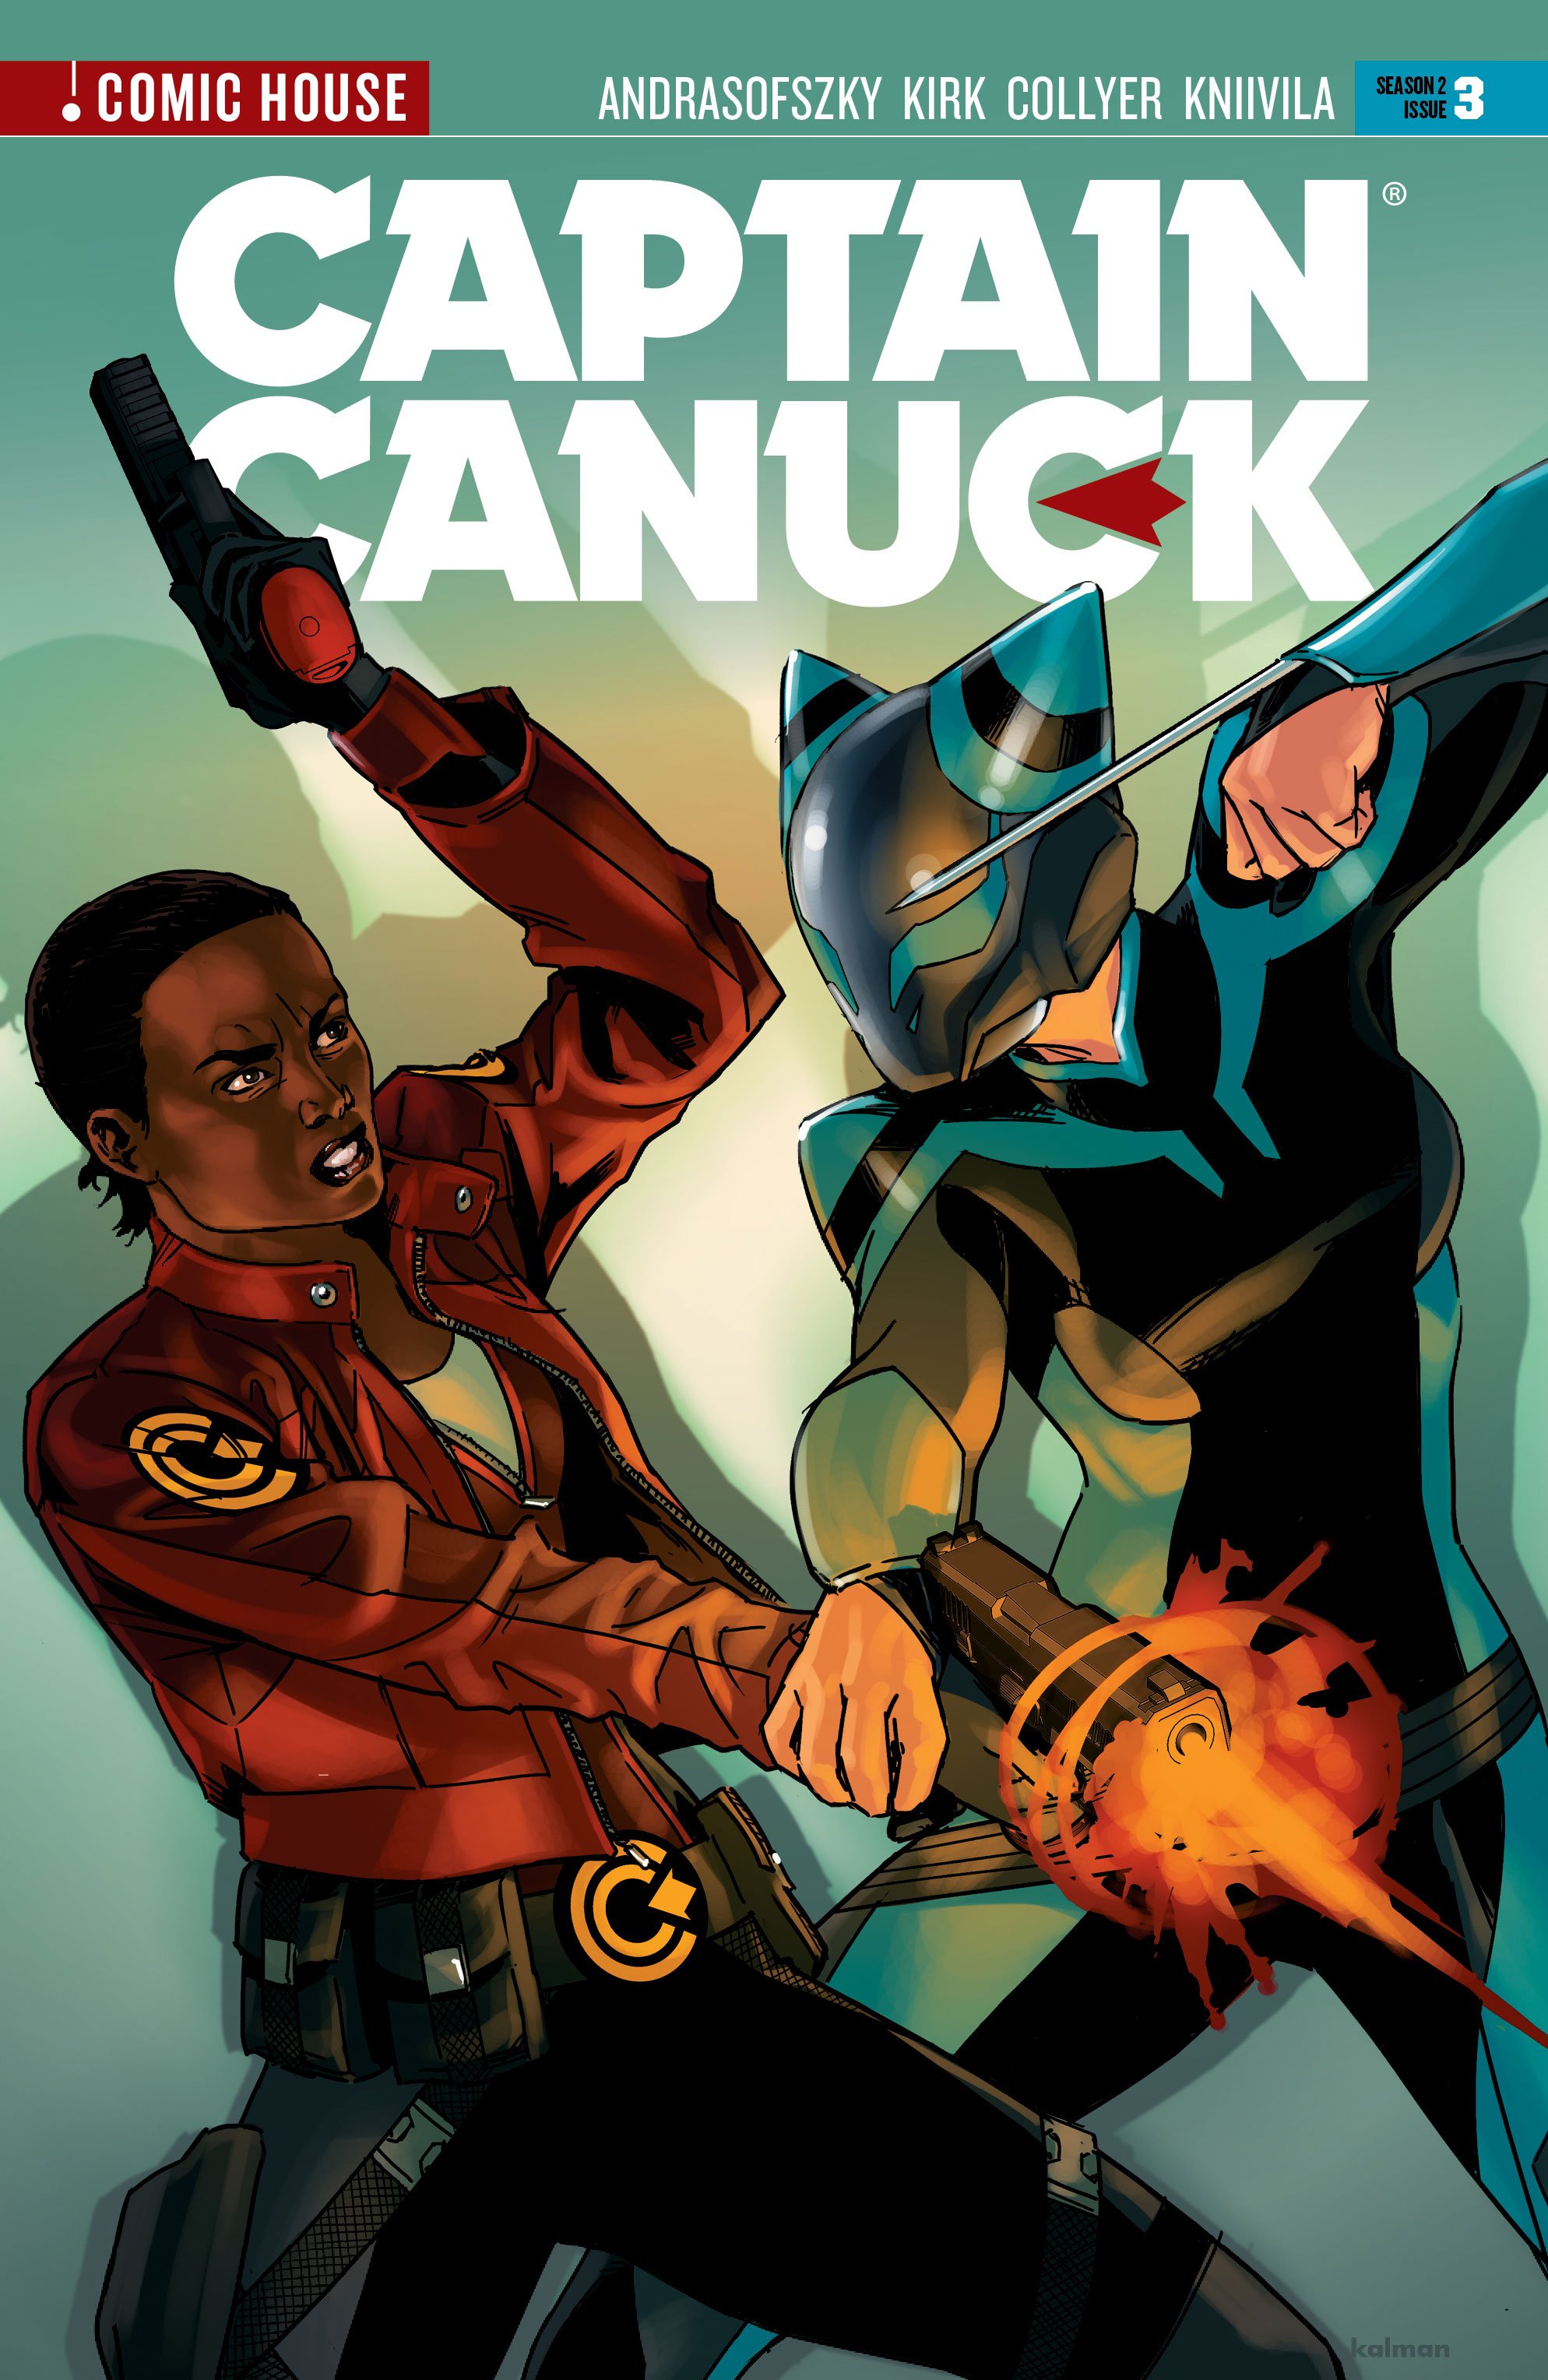 CaptainCanuck_009_S2_Issue3_cover.jpg